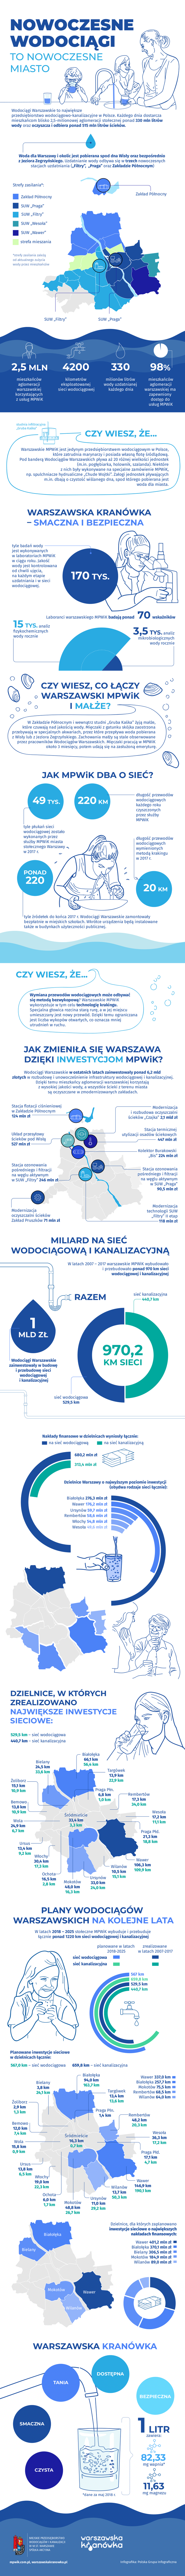 warszawska kranowka infografika